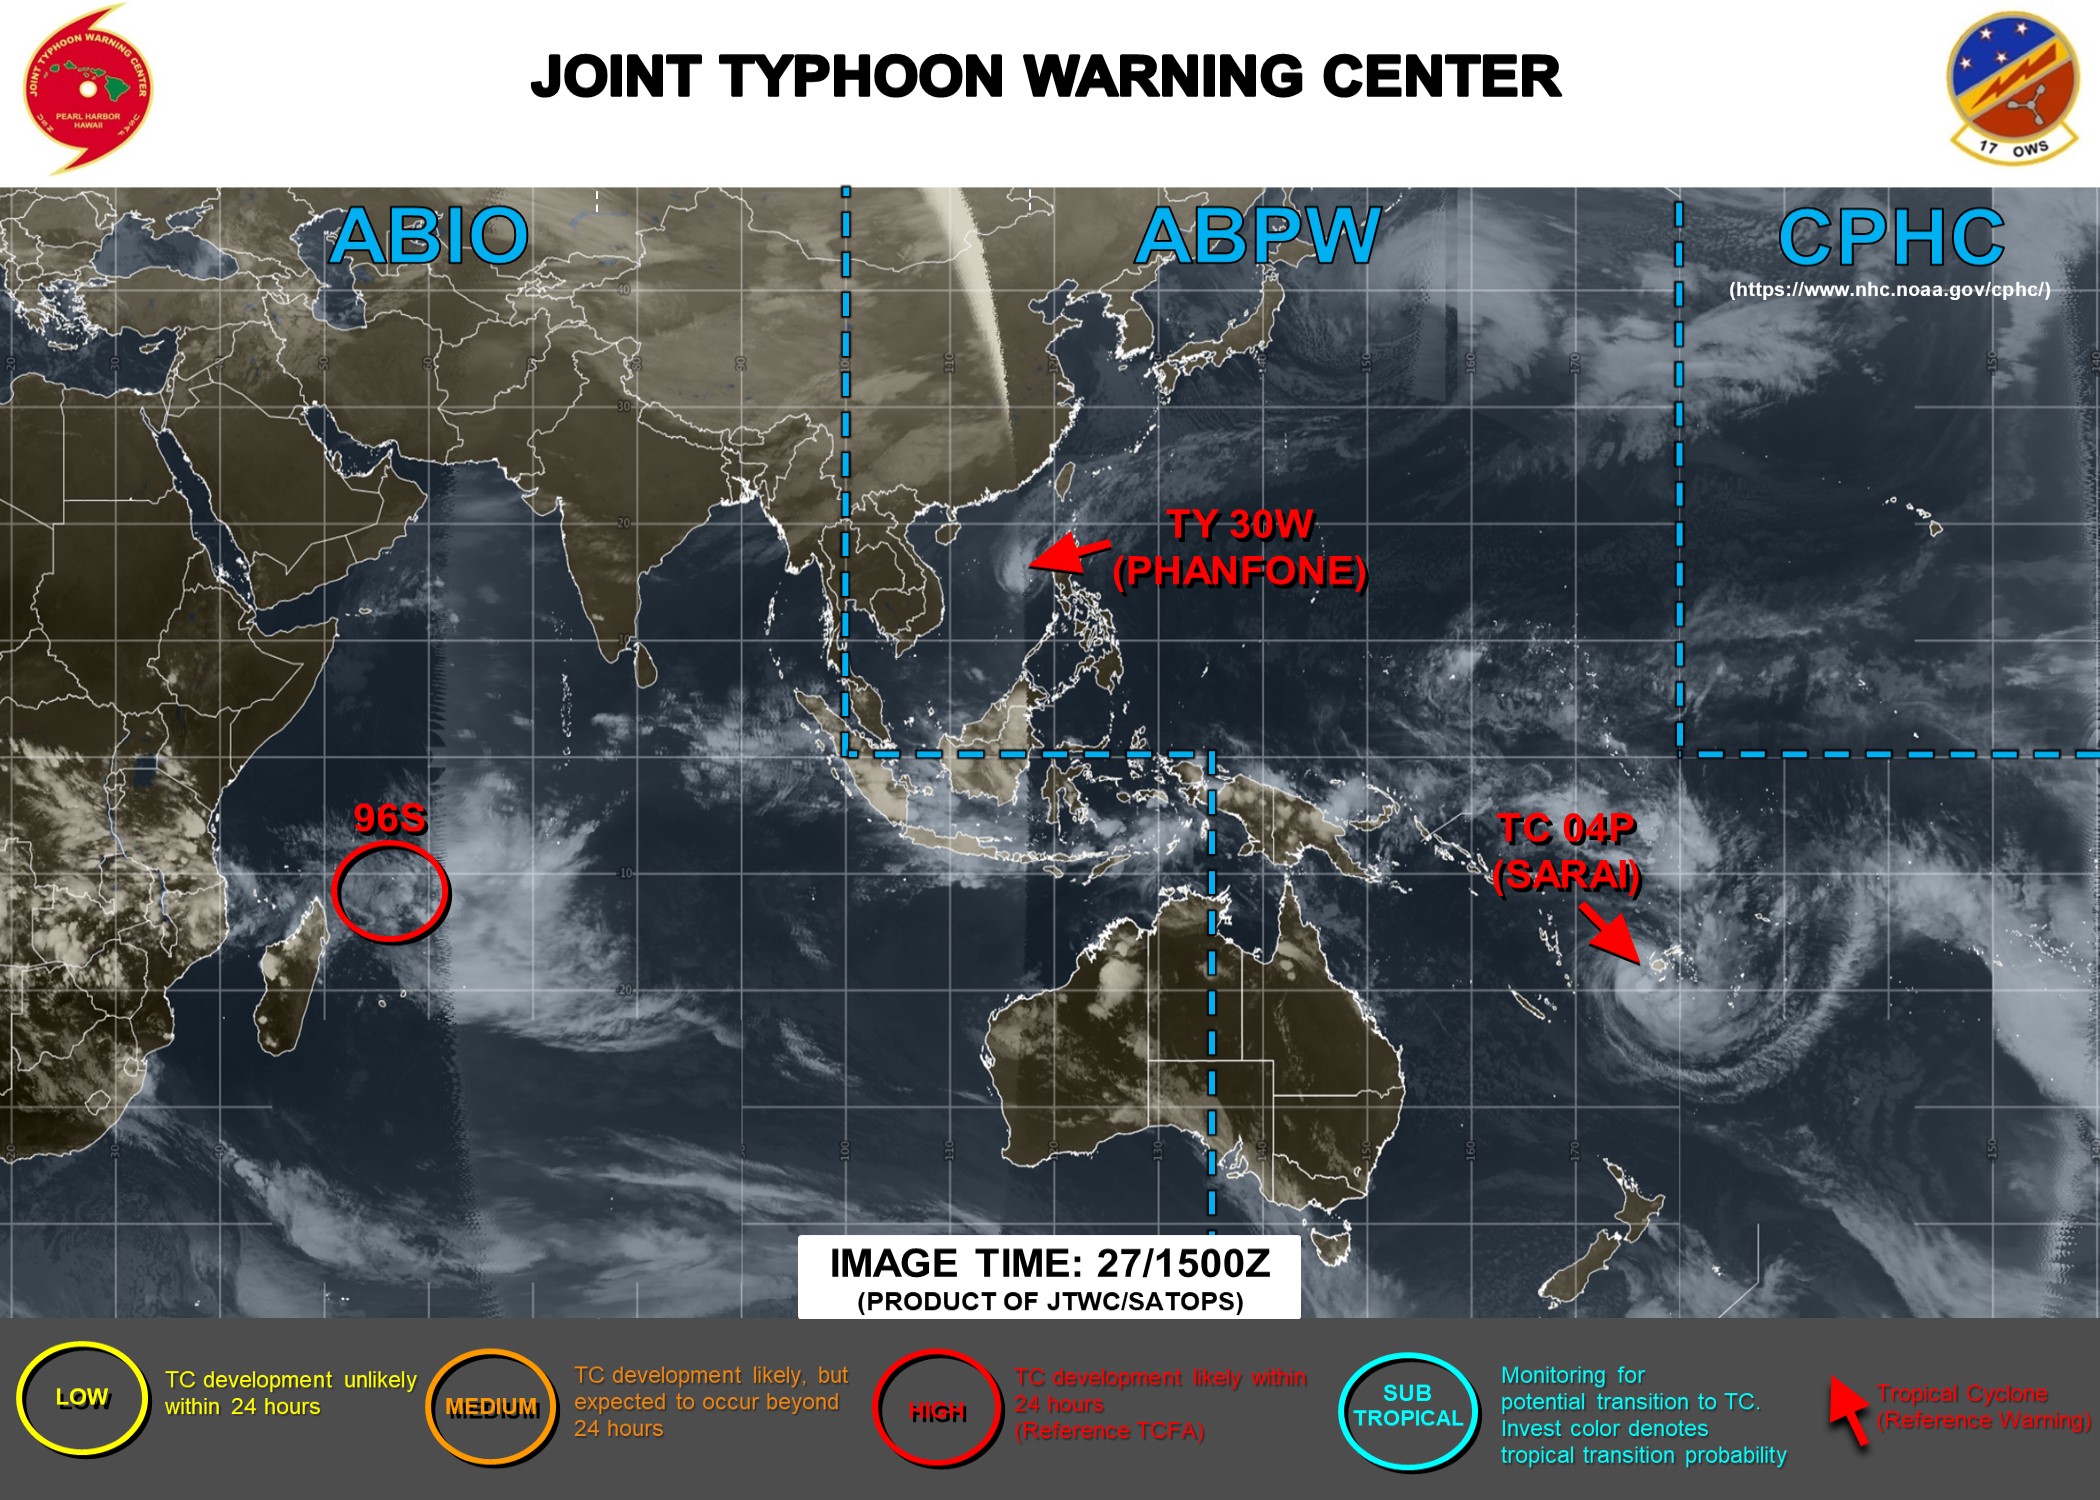  [JTWC] bulletin d'alerte de formation cyclonique émis par la Navy pour 96S au Nord des Mascareignes